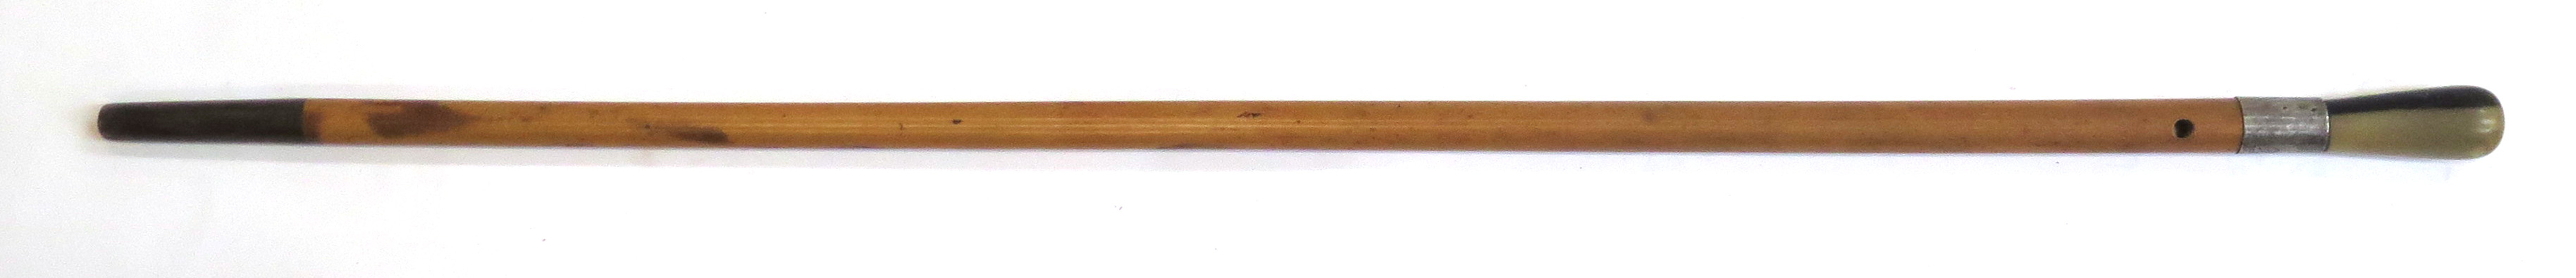 Käpp, bambu och horn med silverbeslag, 1900-talets 1 hälft, _12279a_lg.jpeg